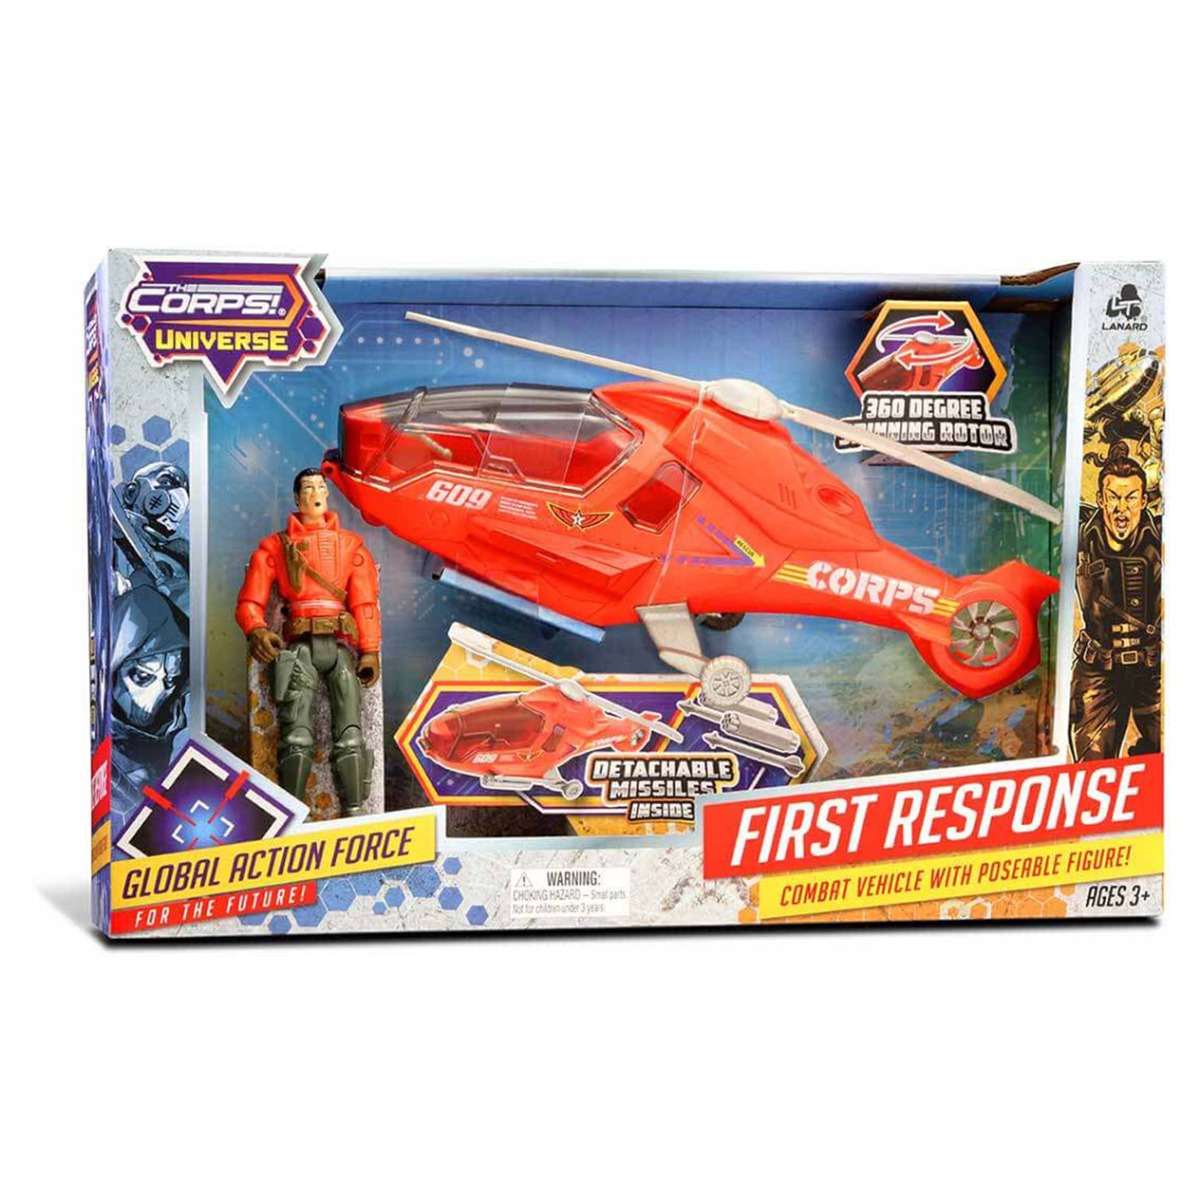 Poze Set elicopter cu figurina, The Corps Universe, Lanard Toys